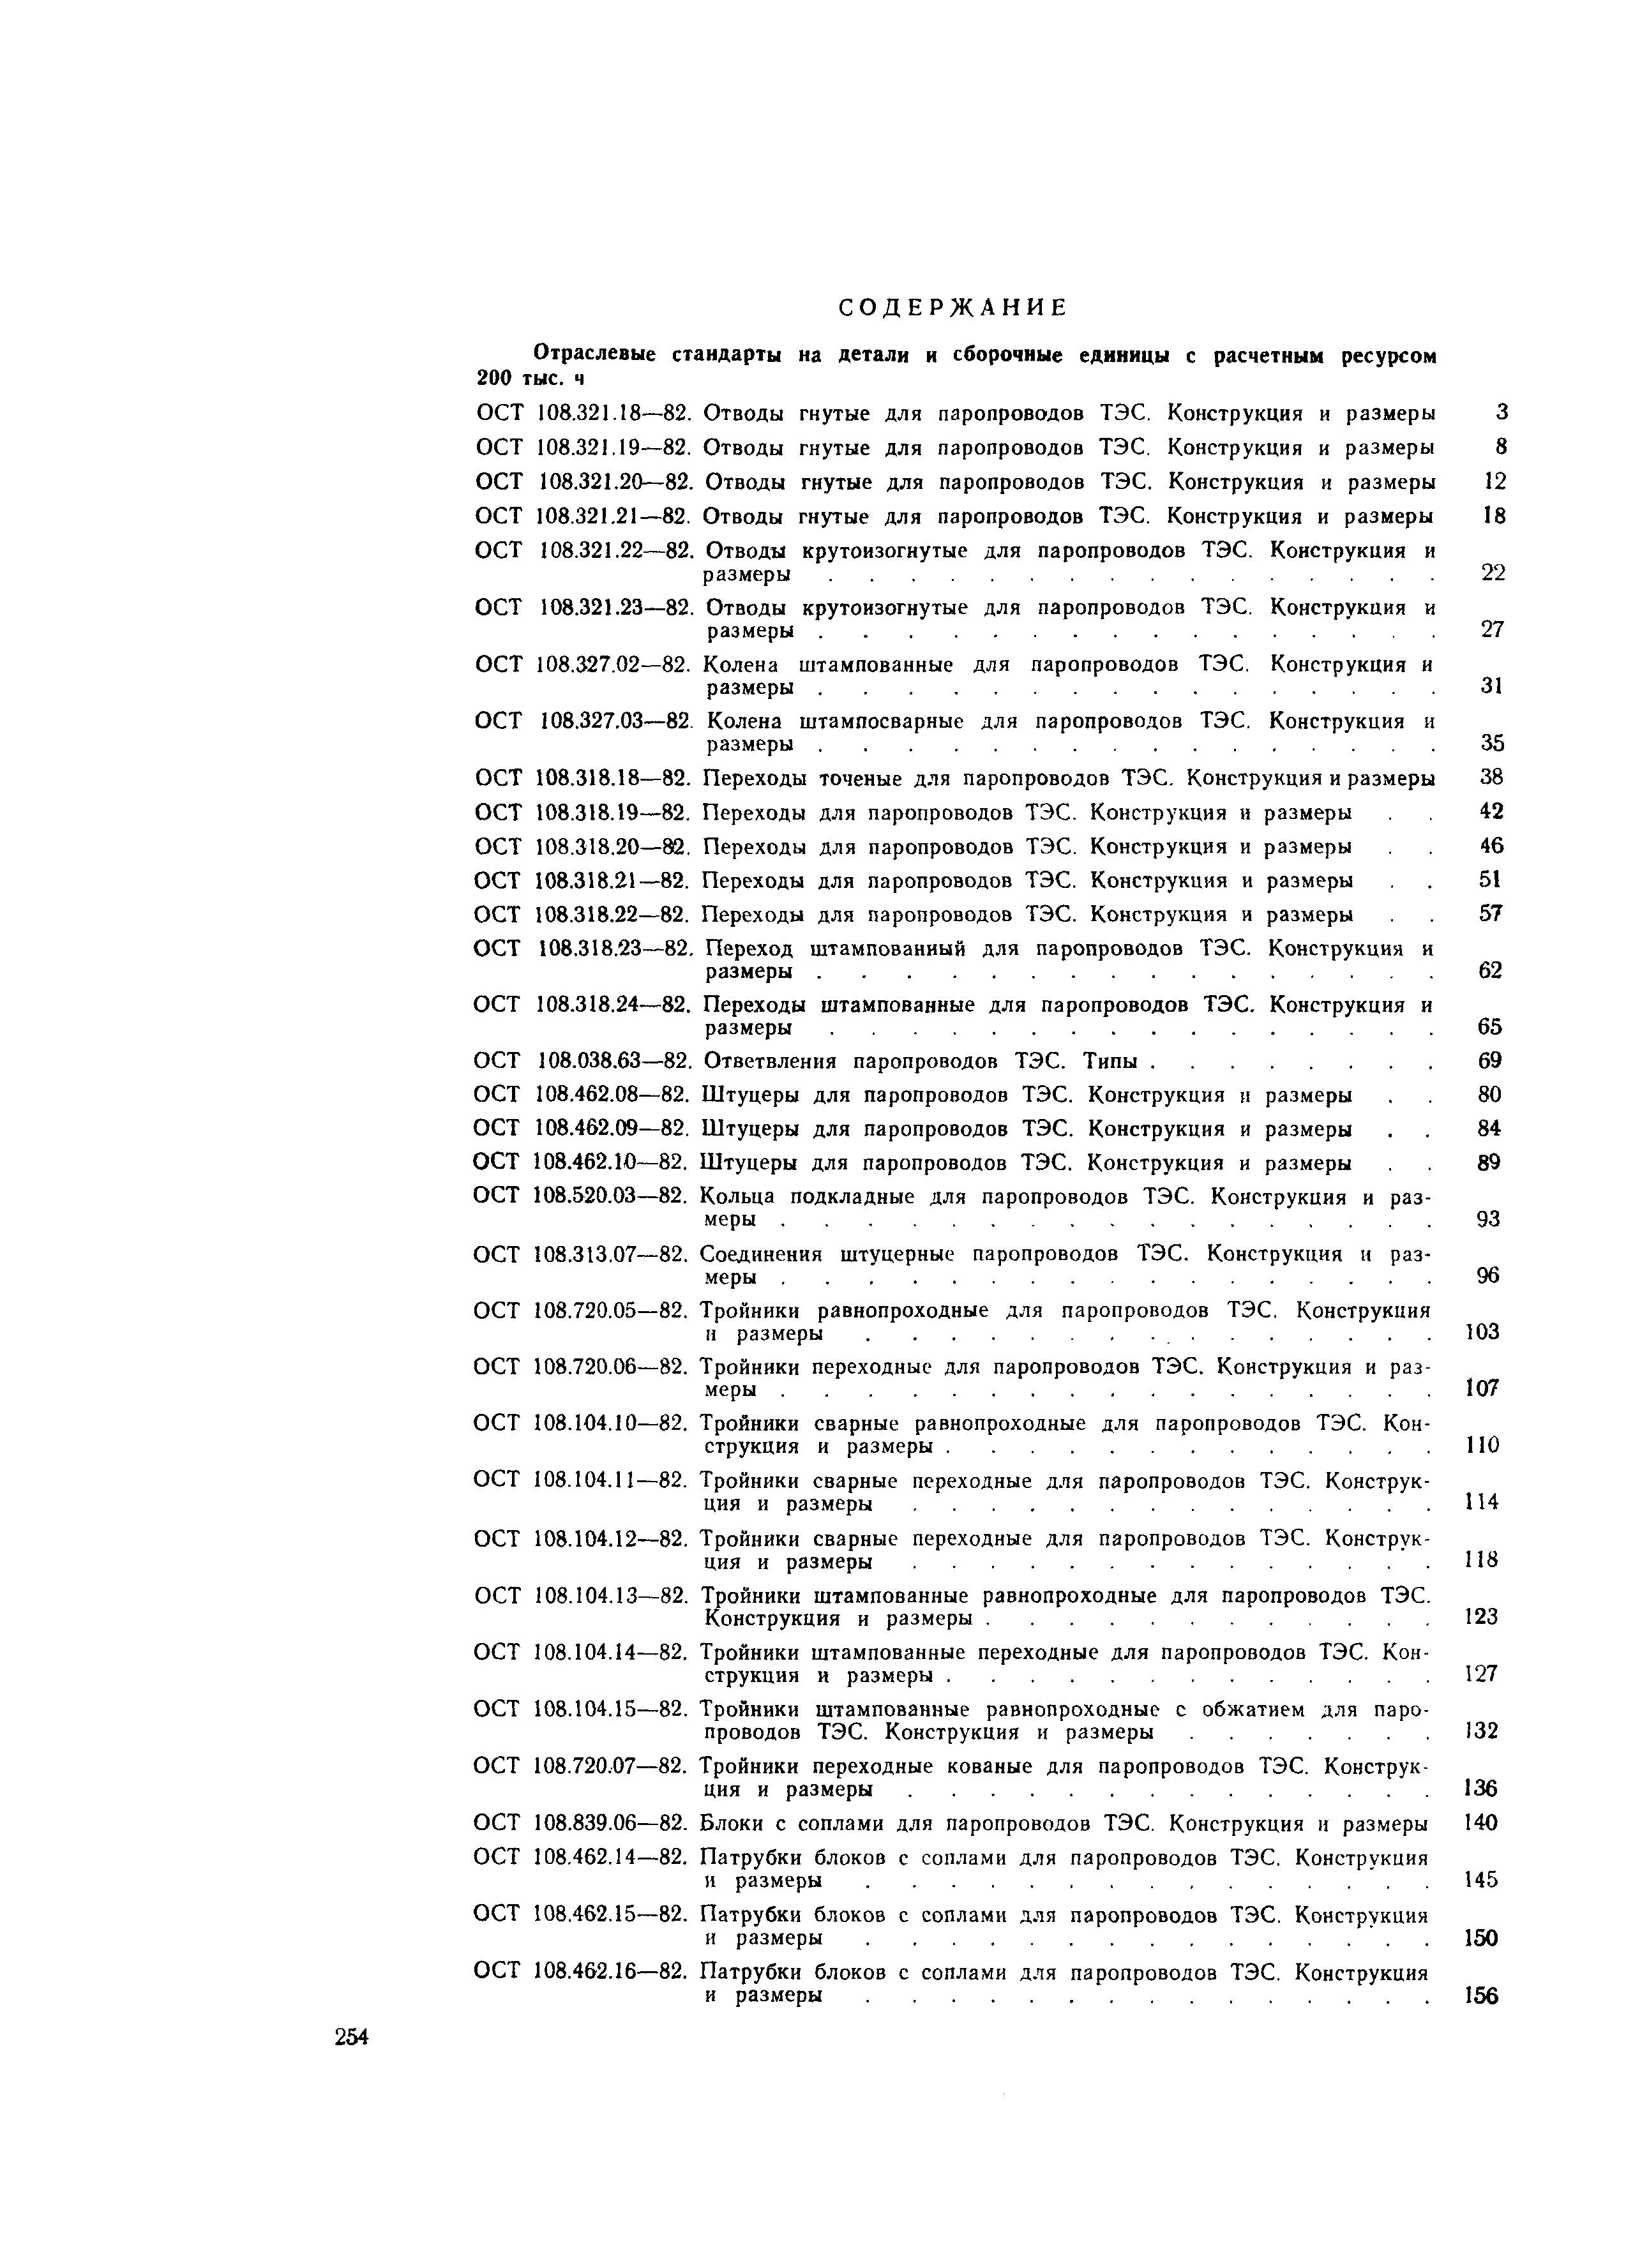 ОСТ 108.104.11-82